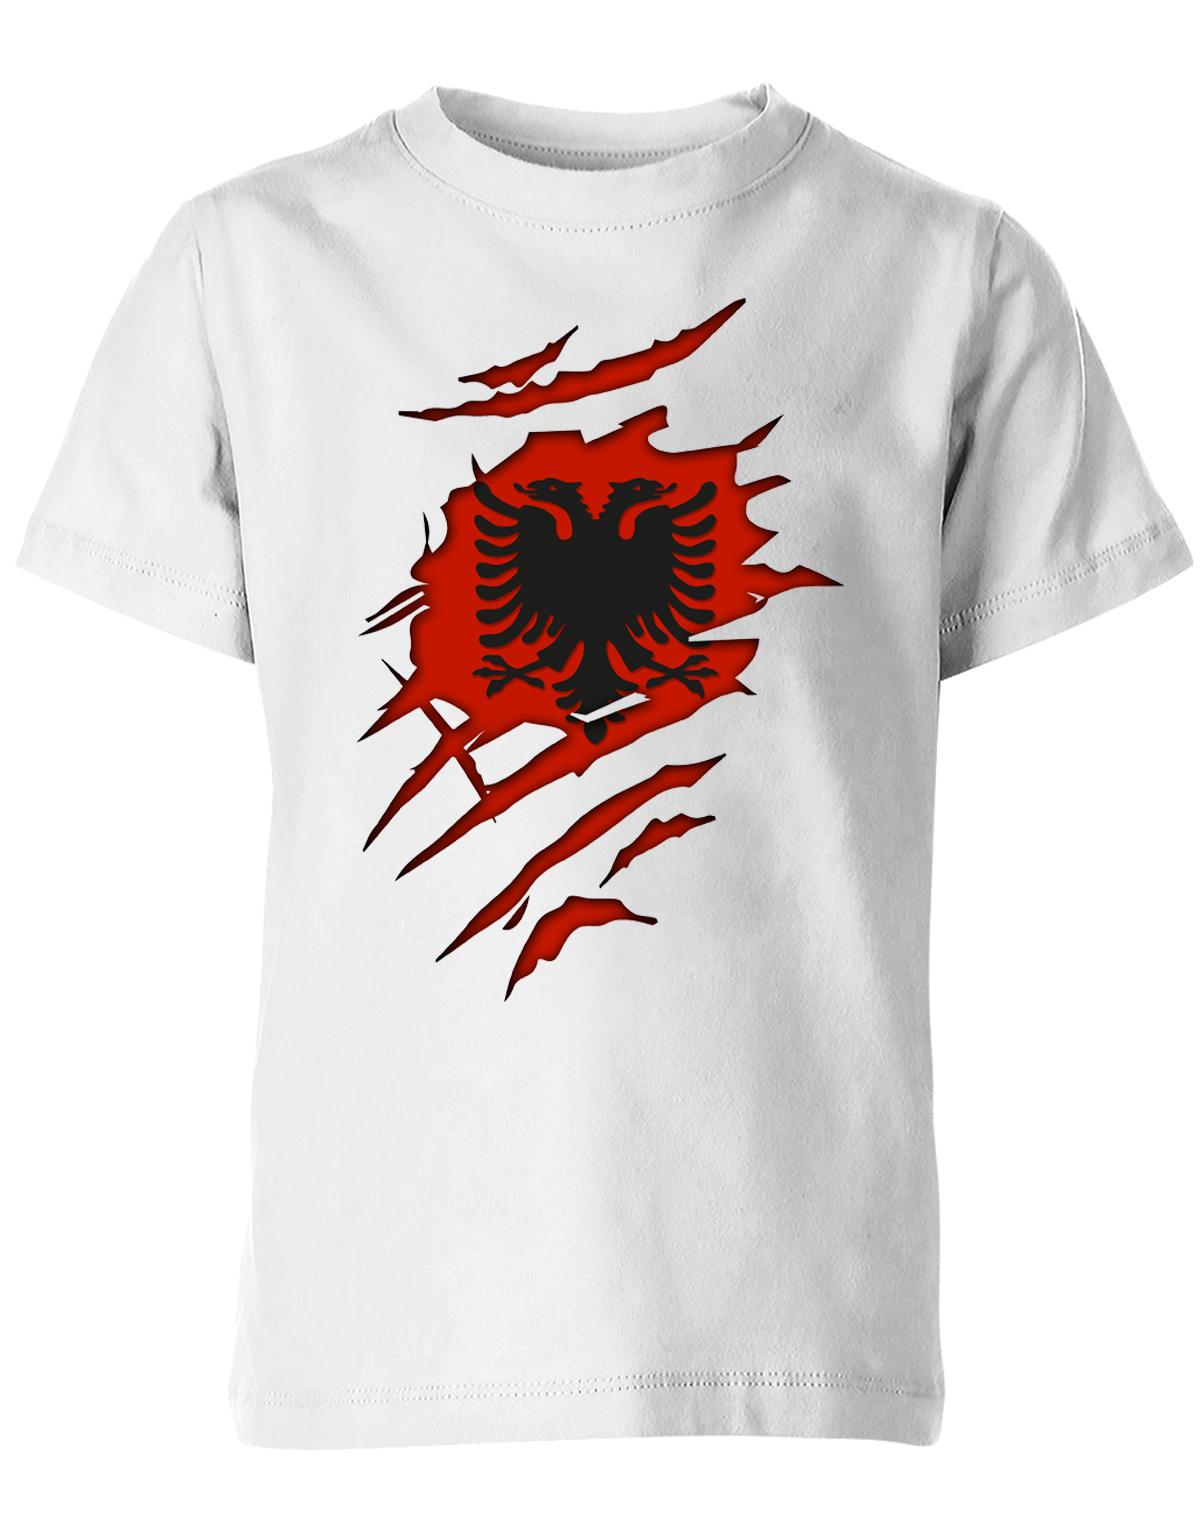 Albania-Aufgerissen-Kinder-Shirt-Weiss